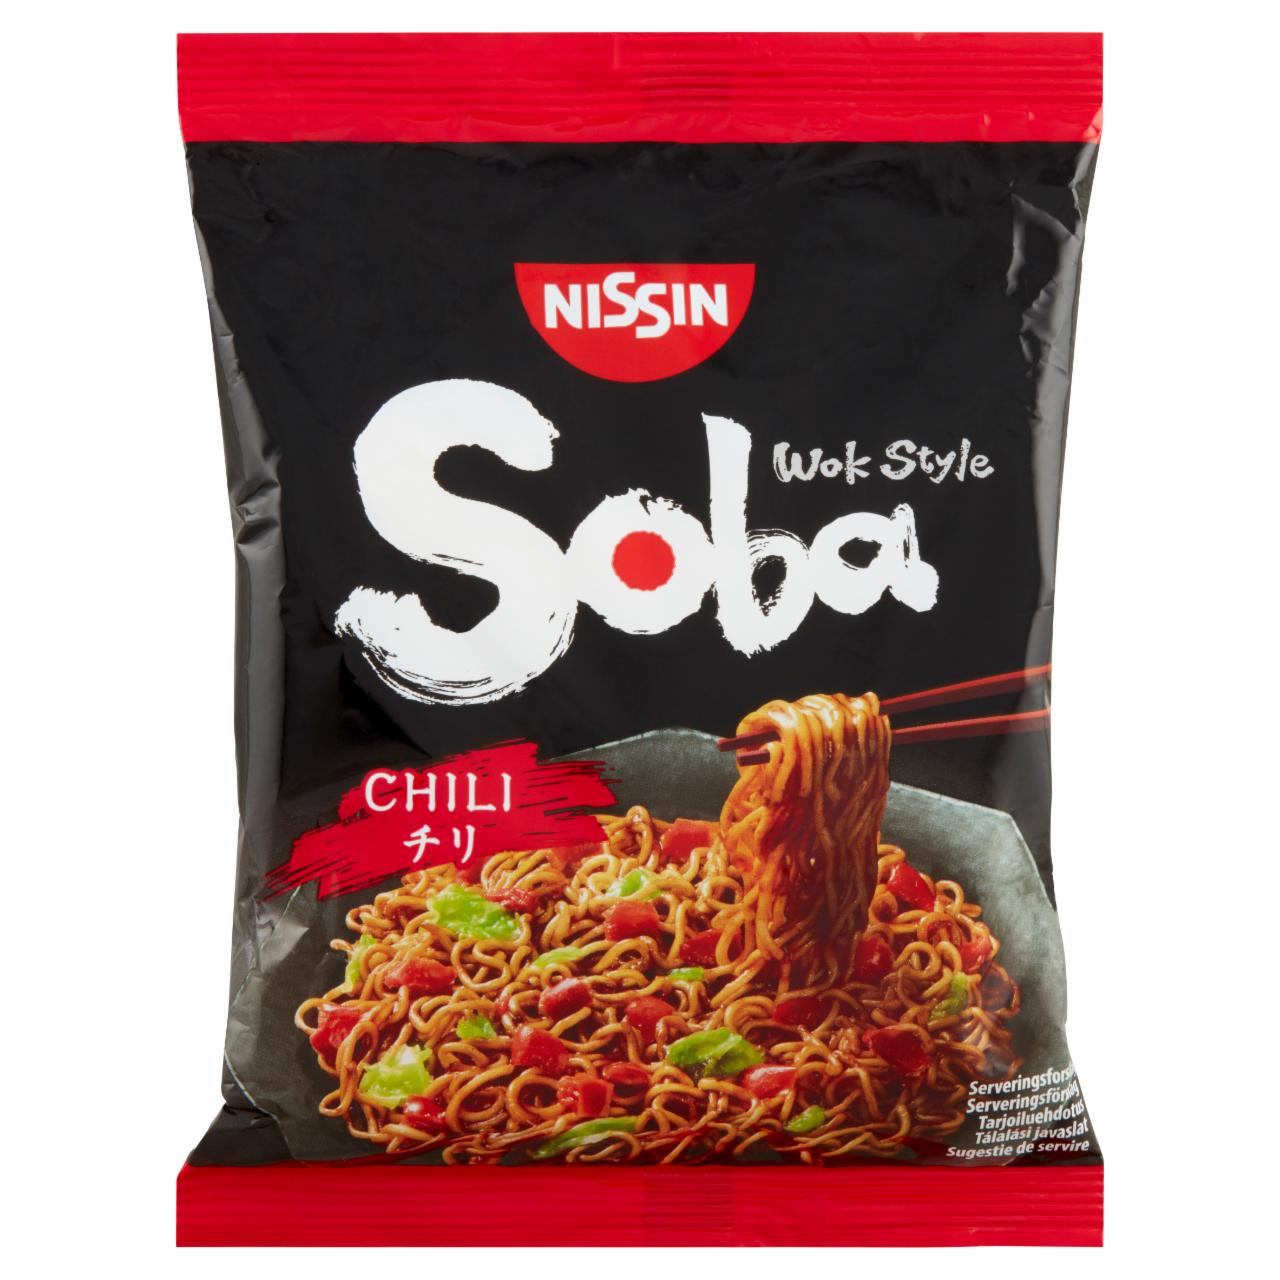 Képek - Nissin Soba Wok Style instant tészta búzalisztből chili ízesítő szósszal 111 g